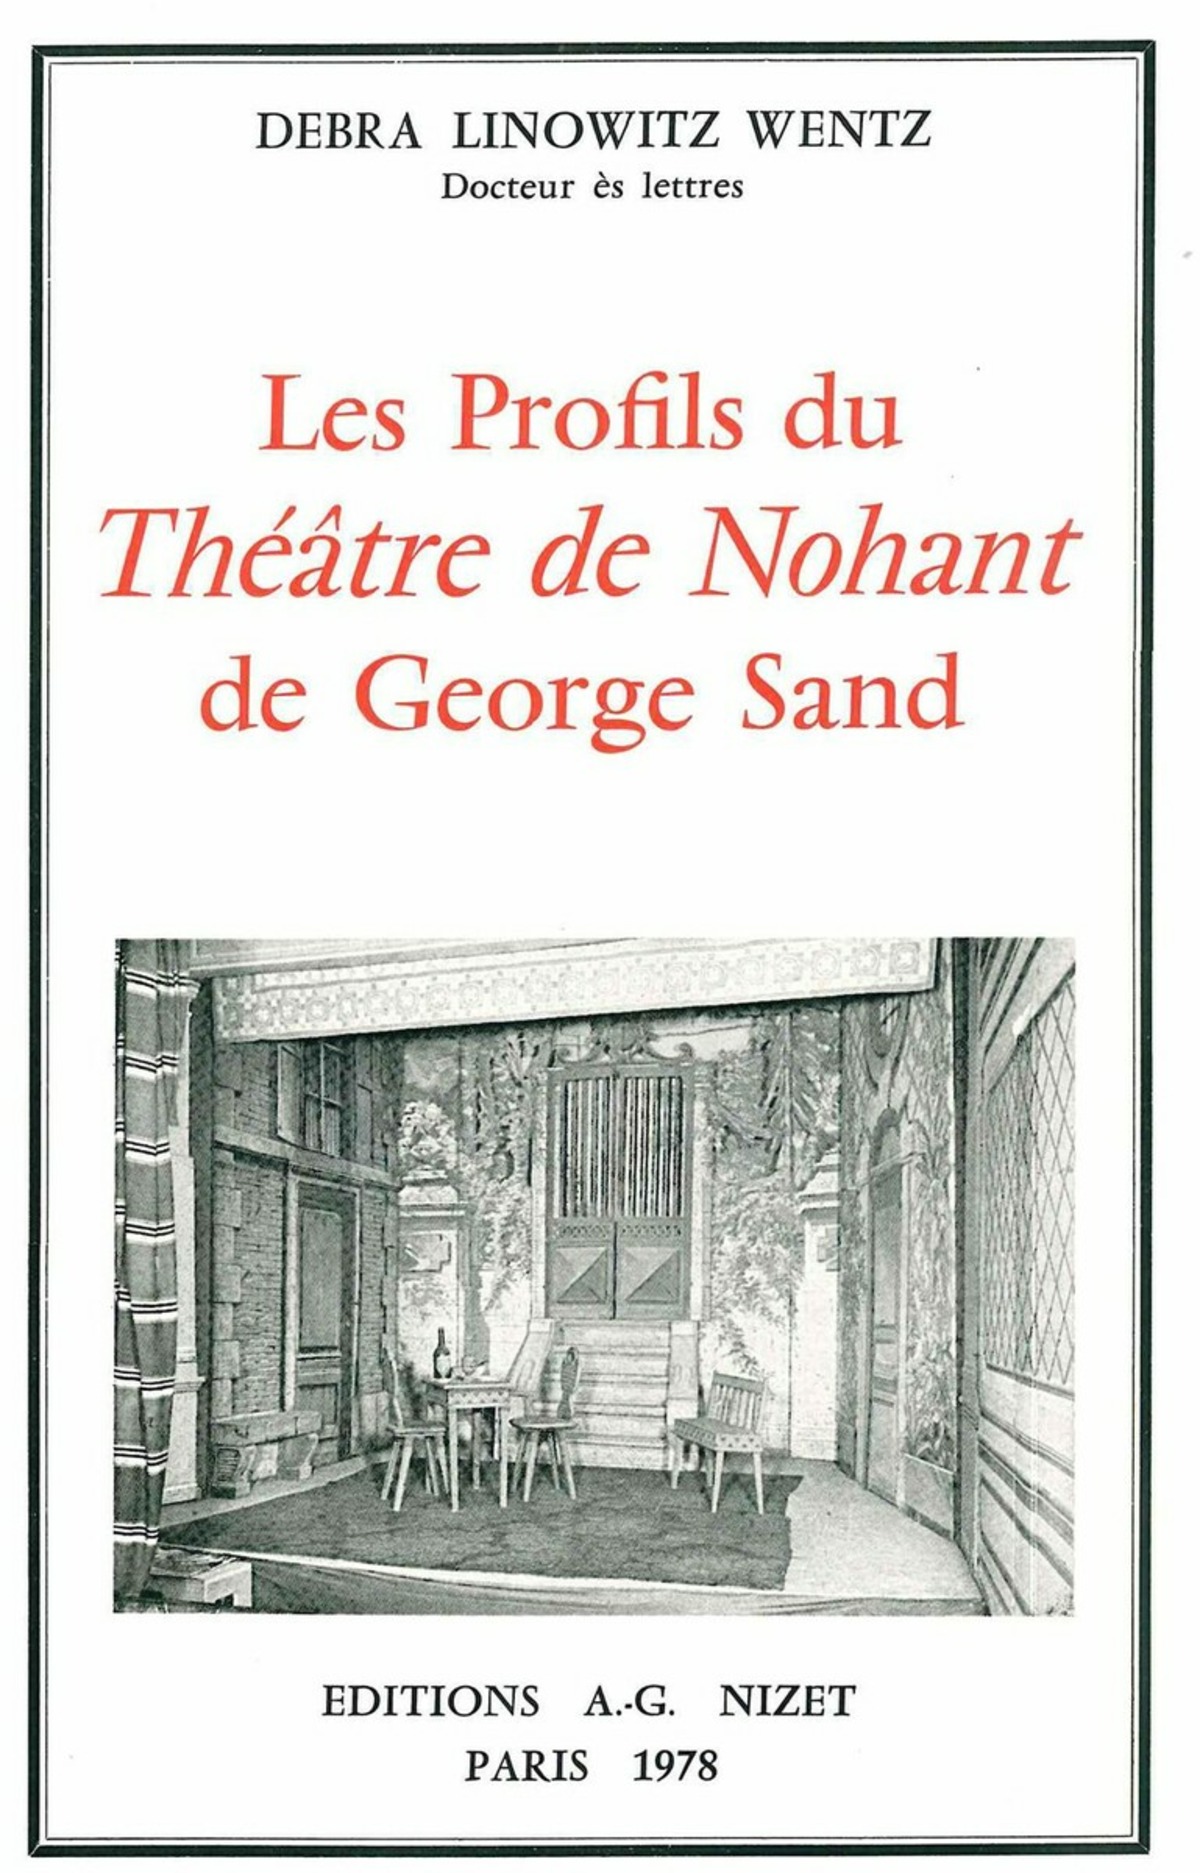 Les Profils du Théâtre de Nohant de George Sand